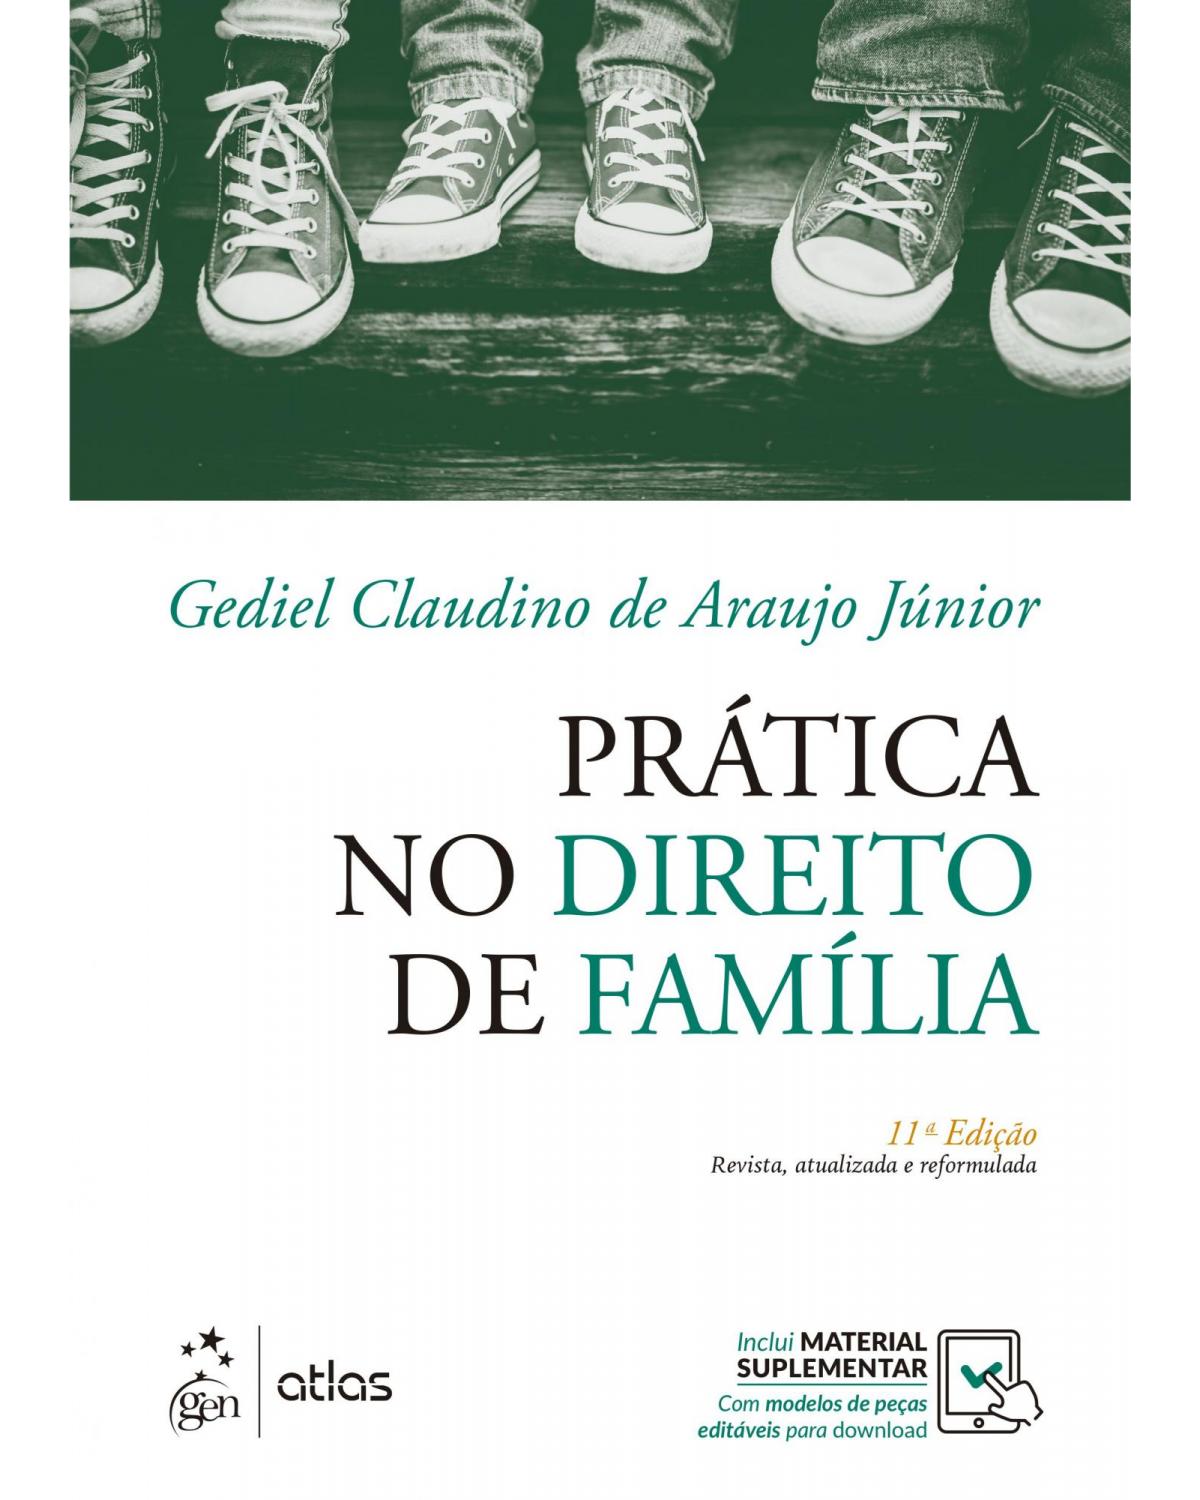 Prática no direito de família - 11ª Edição | 2019